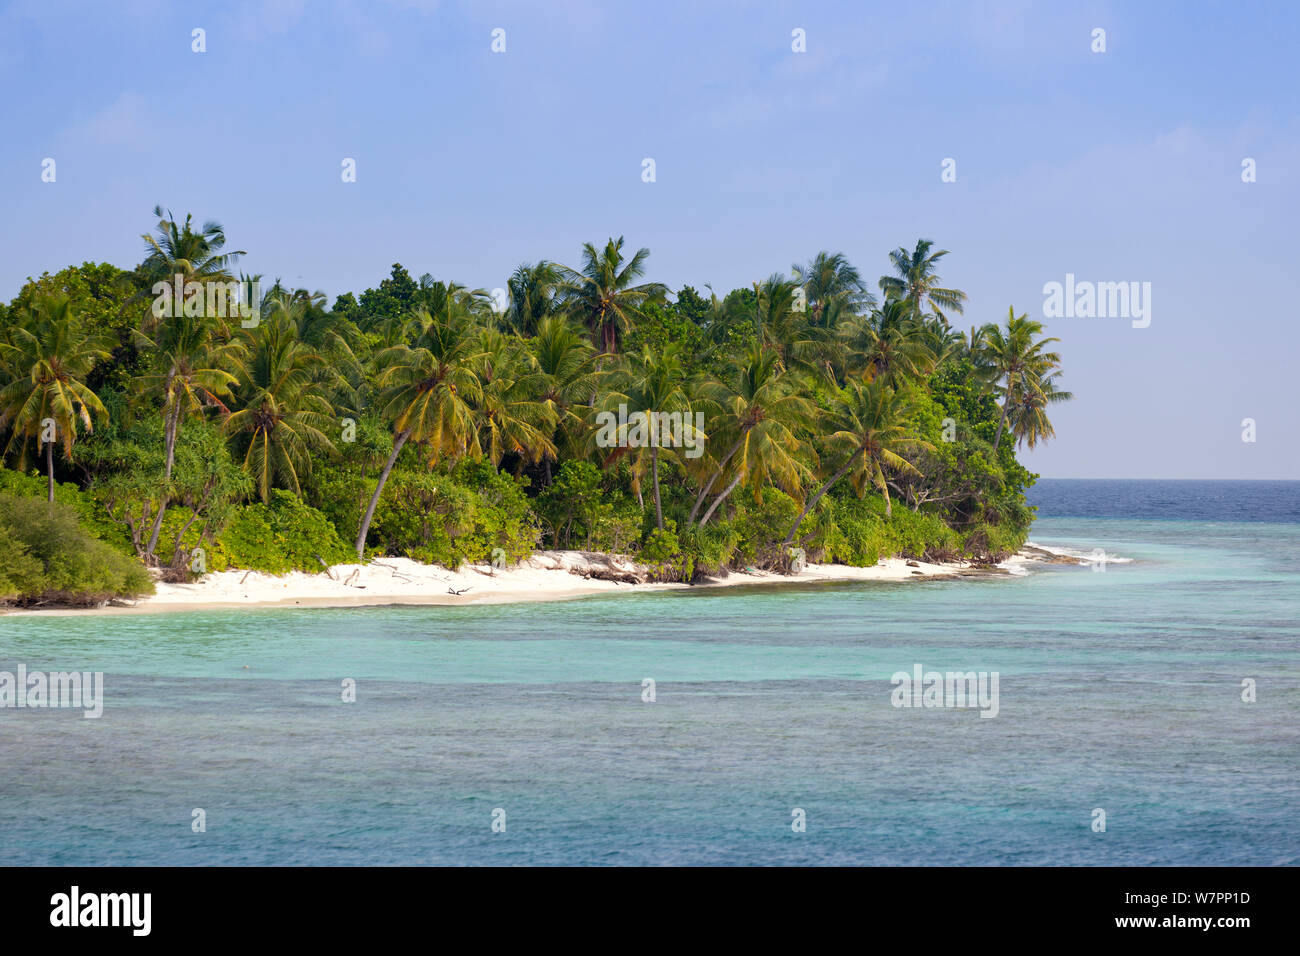 Île tropicale avec une plage de sable blanc, Maldives, océan Indien, Décembre 2011 Banque D'Images